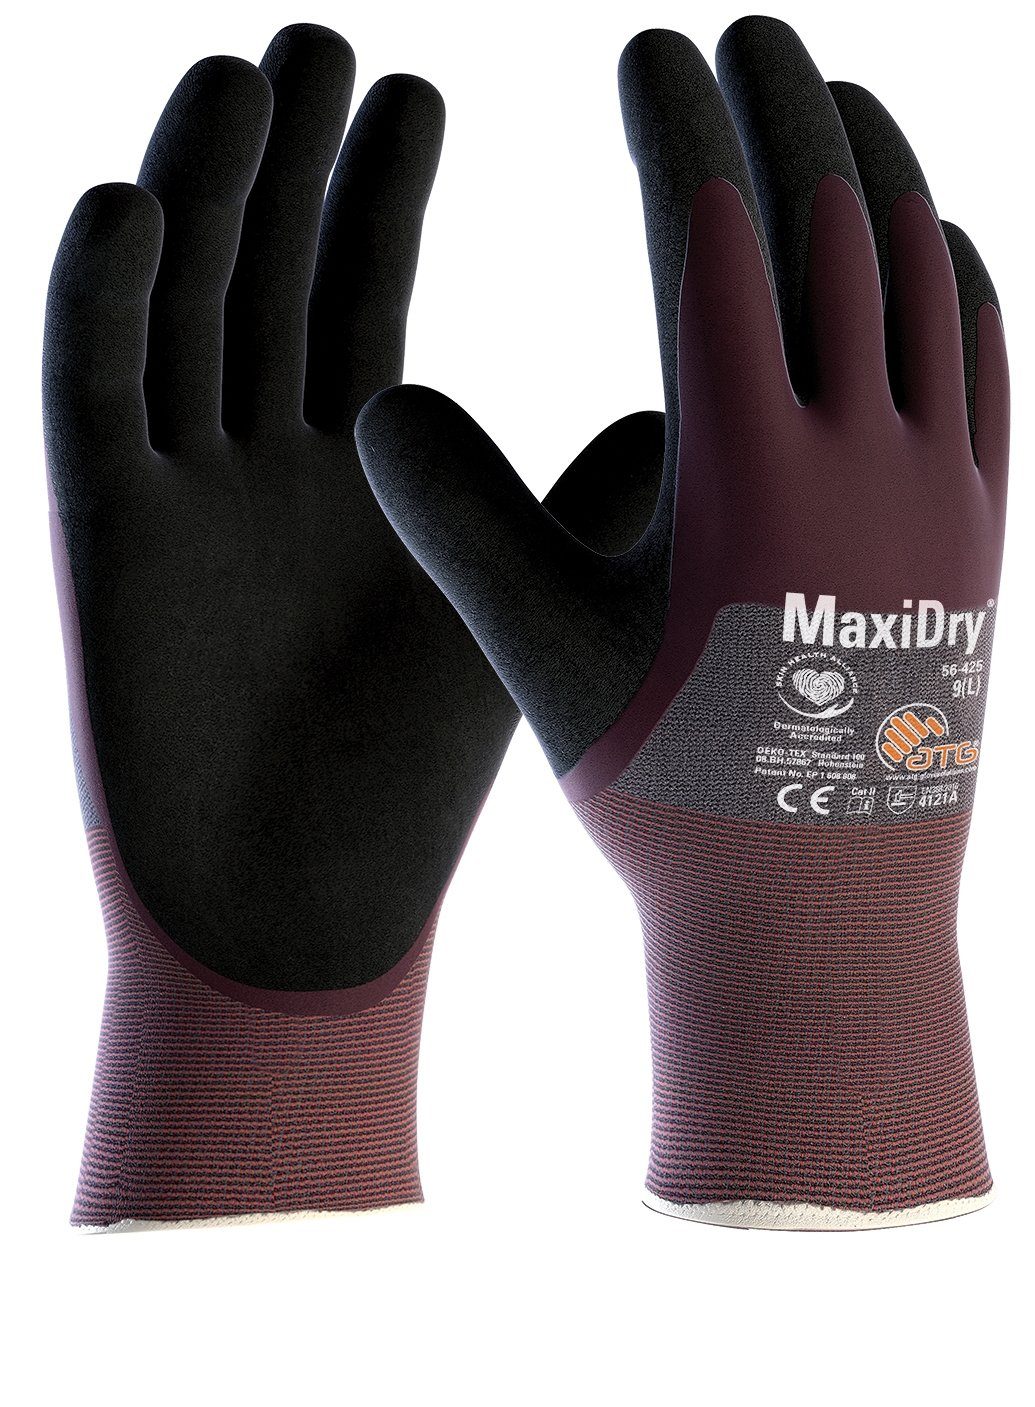 ATG Nitril-Handschuhe "MaxiDry®", 3/4 beschichtet Paar (56-425) 12